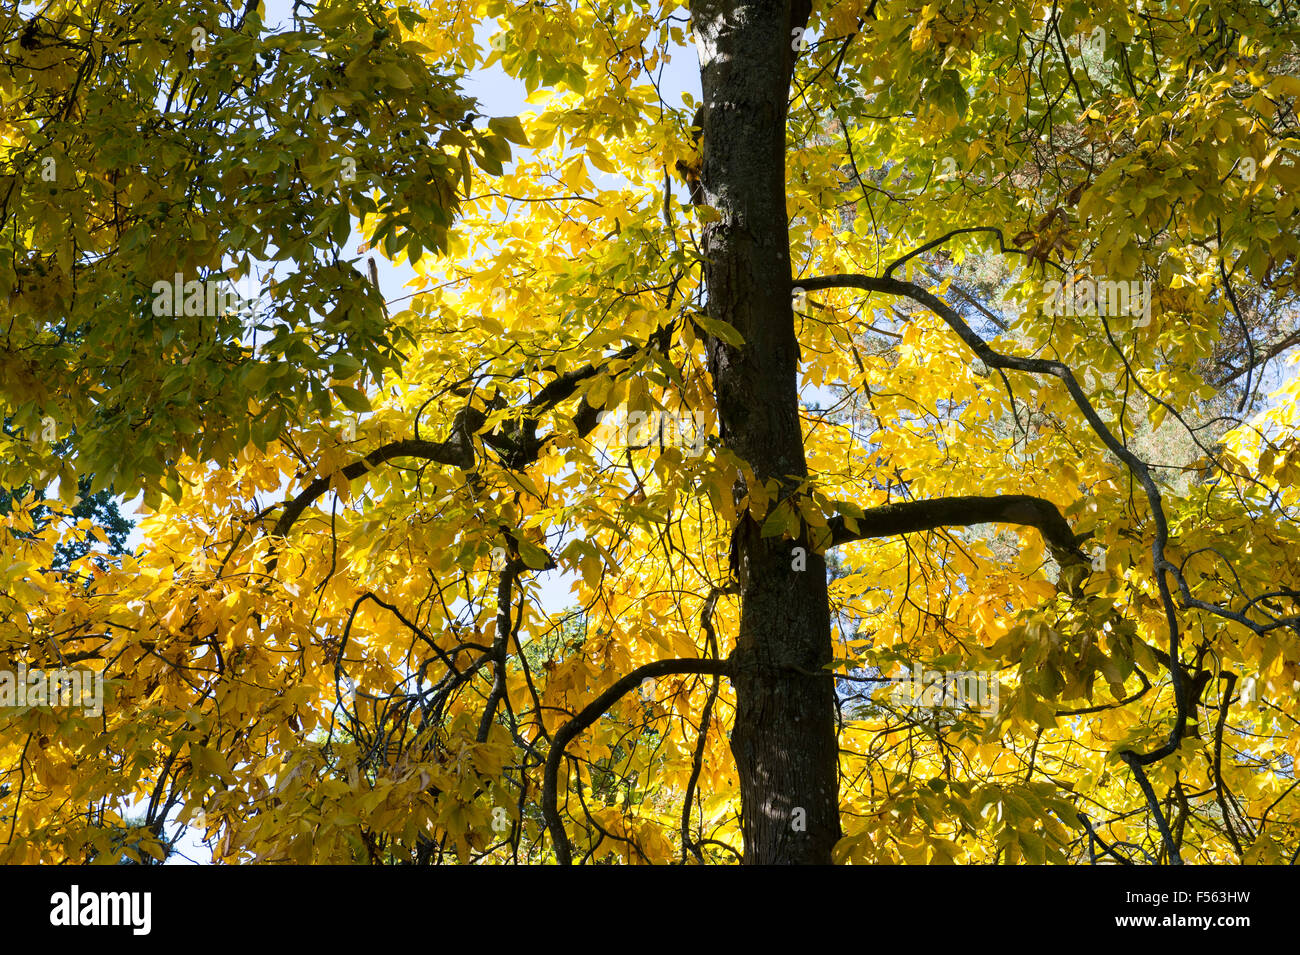 Carya ovata. Shagbark hickory tree in autumn Stock Photo